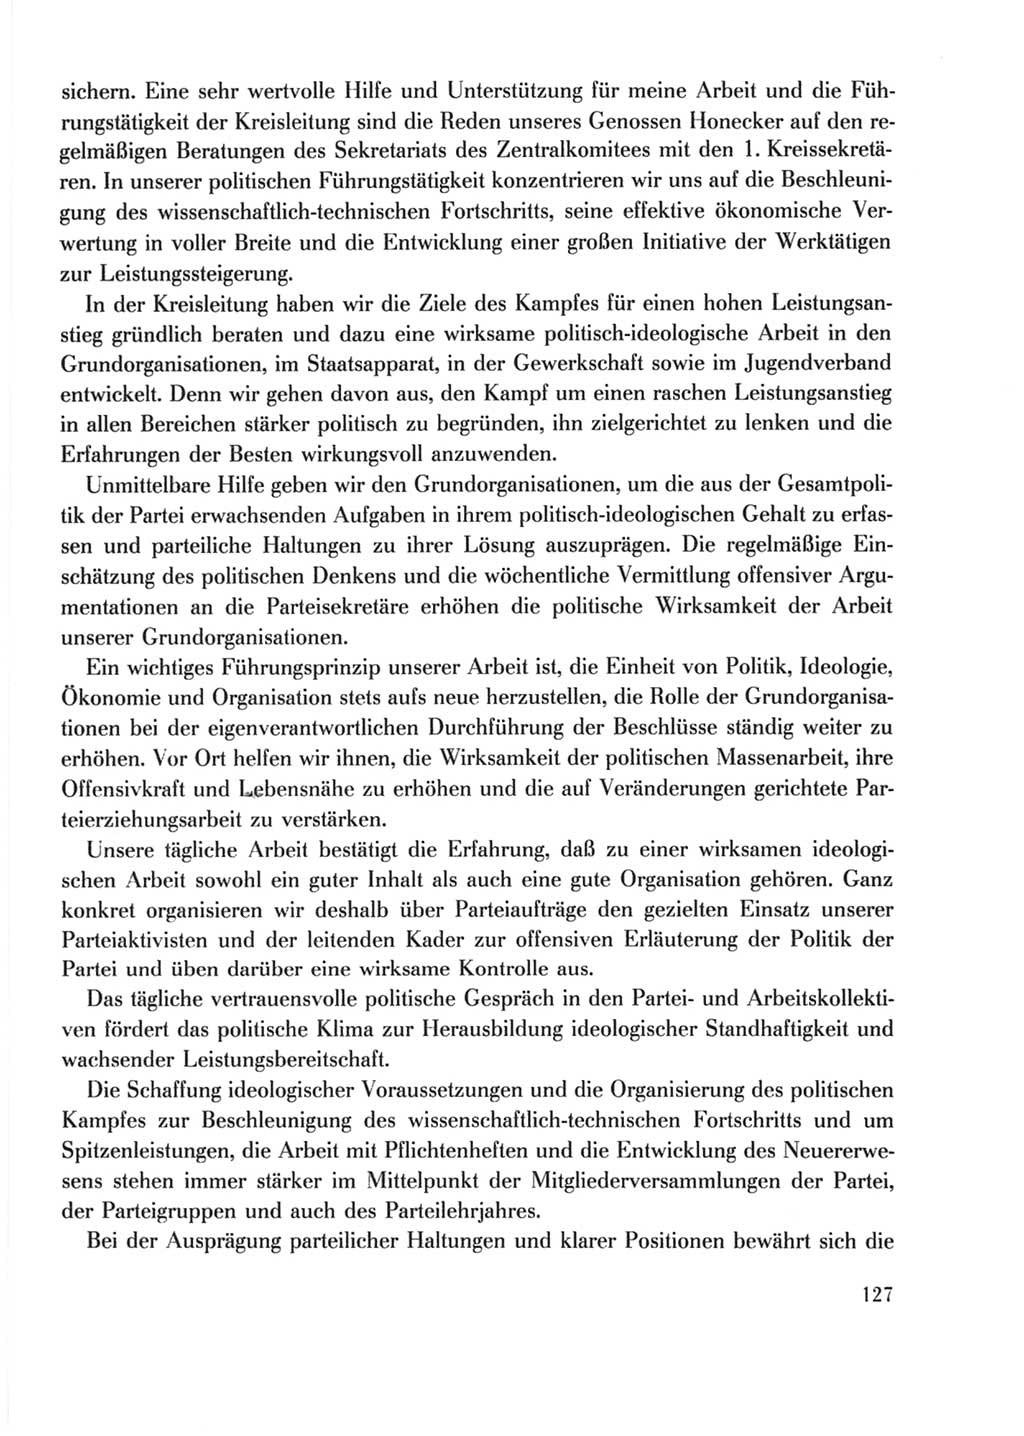 Protokoll der Verhandlungen des Ⅹ. Parteitages der Sozialistischen Einheitspartei Deutschlands (SED) [Deutsche Demokratische Republik (DDR)] 1981, Band 2, Seite 127 (Prot. Verh. Ⅹ. PT SED DDR 1981, Bd. 2, S. 127)